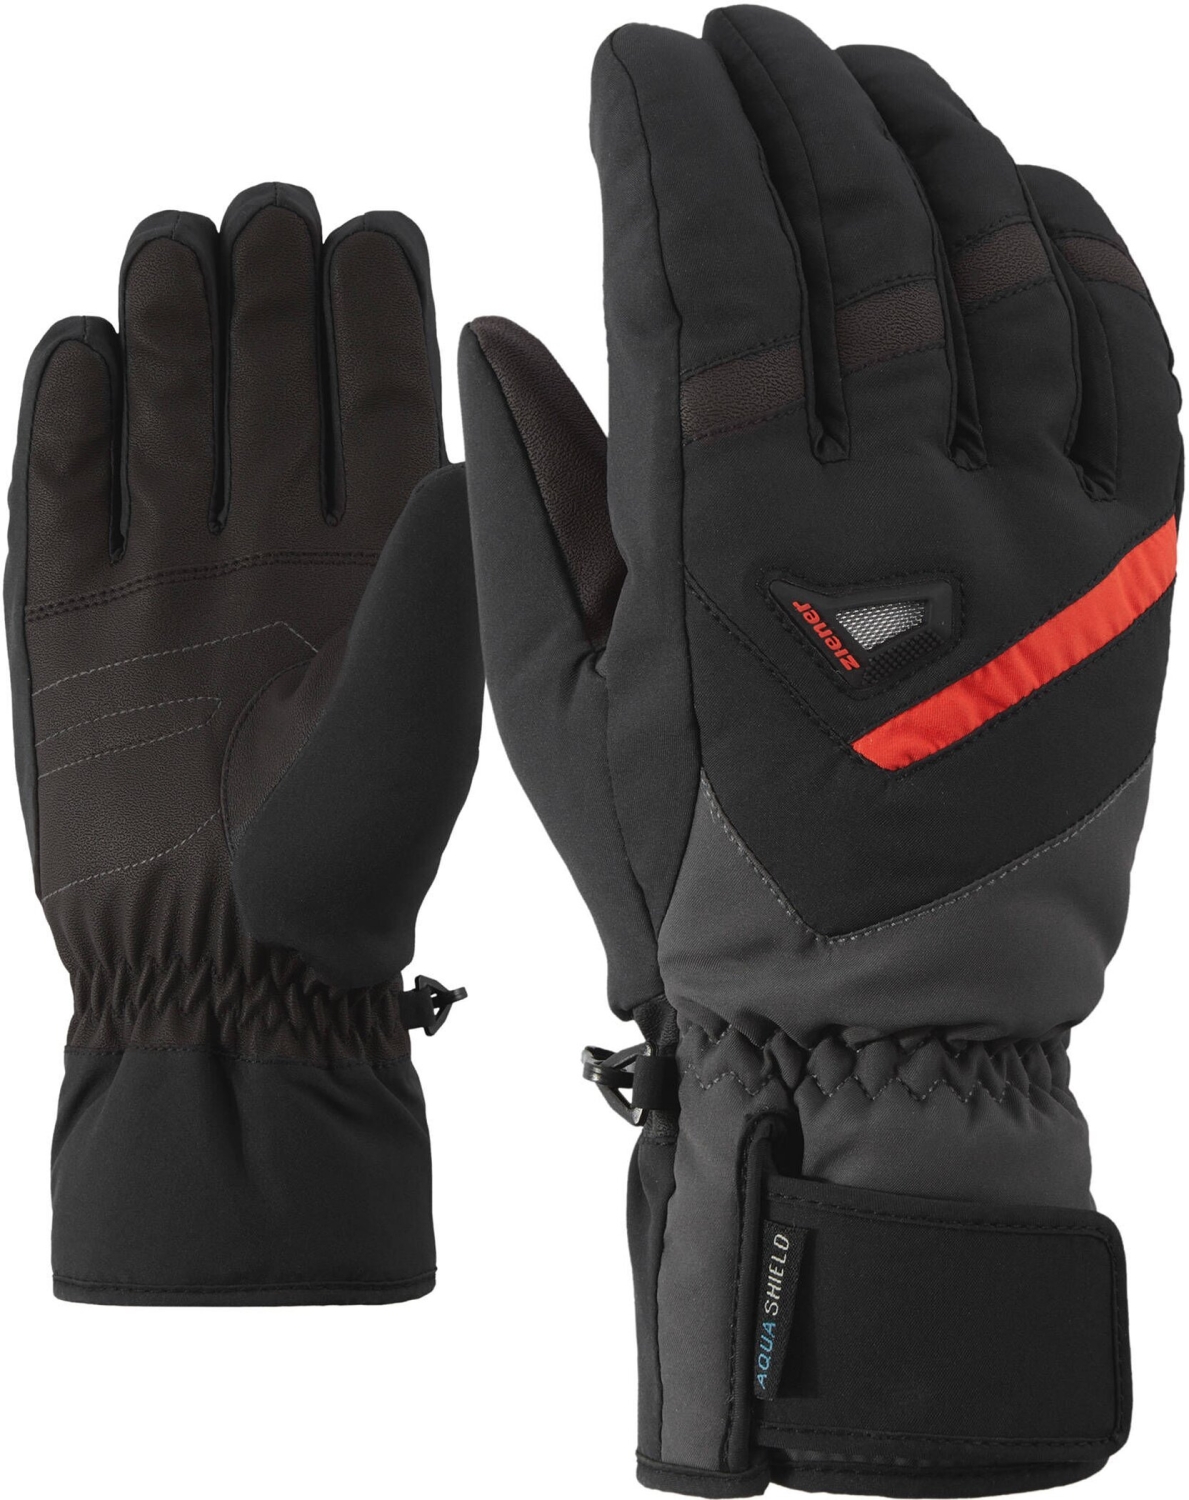 [Neue Produkte sind günstig] Ziener GARY alpine ski AS(R) kaufen glove online